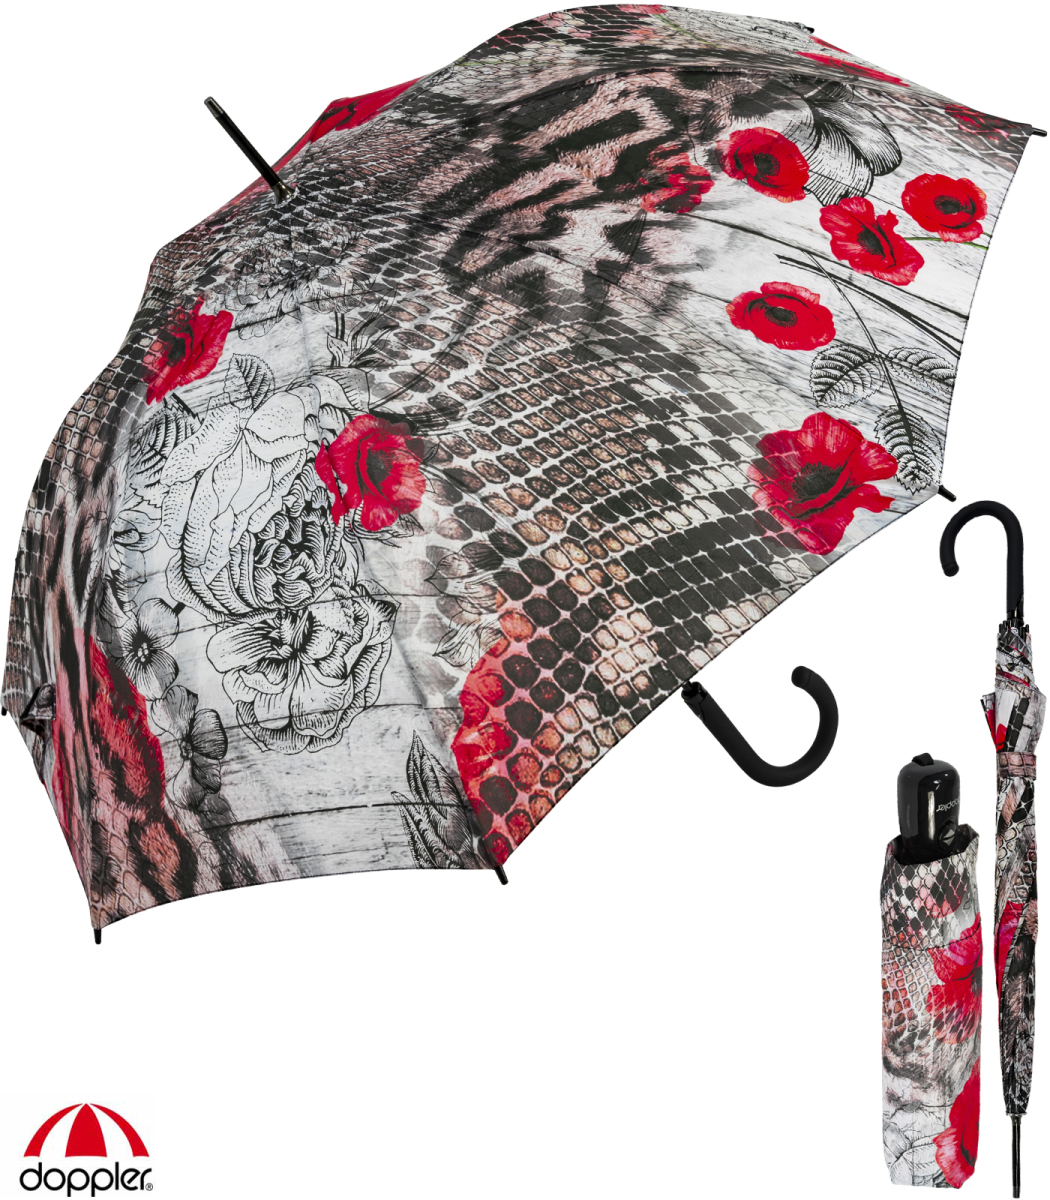 Doppler Damen Regenschirm Serpent, € 24,99